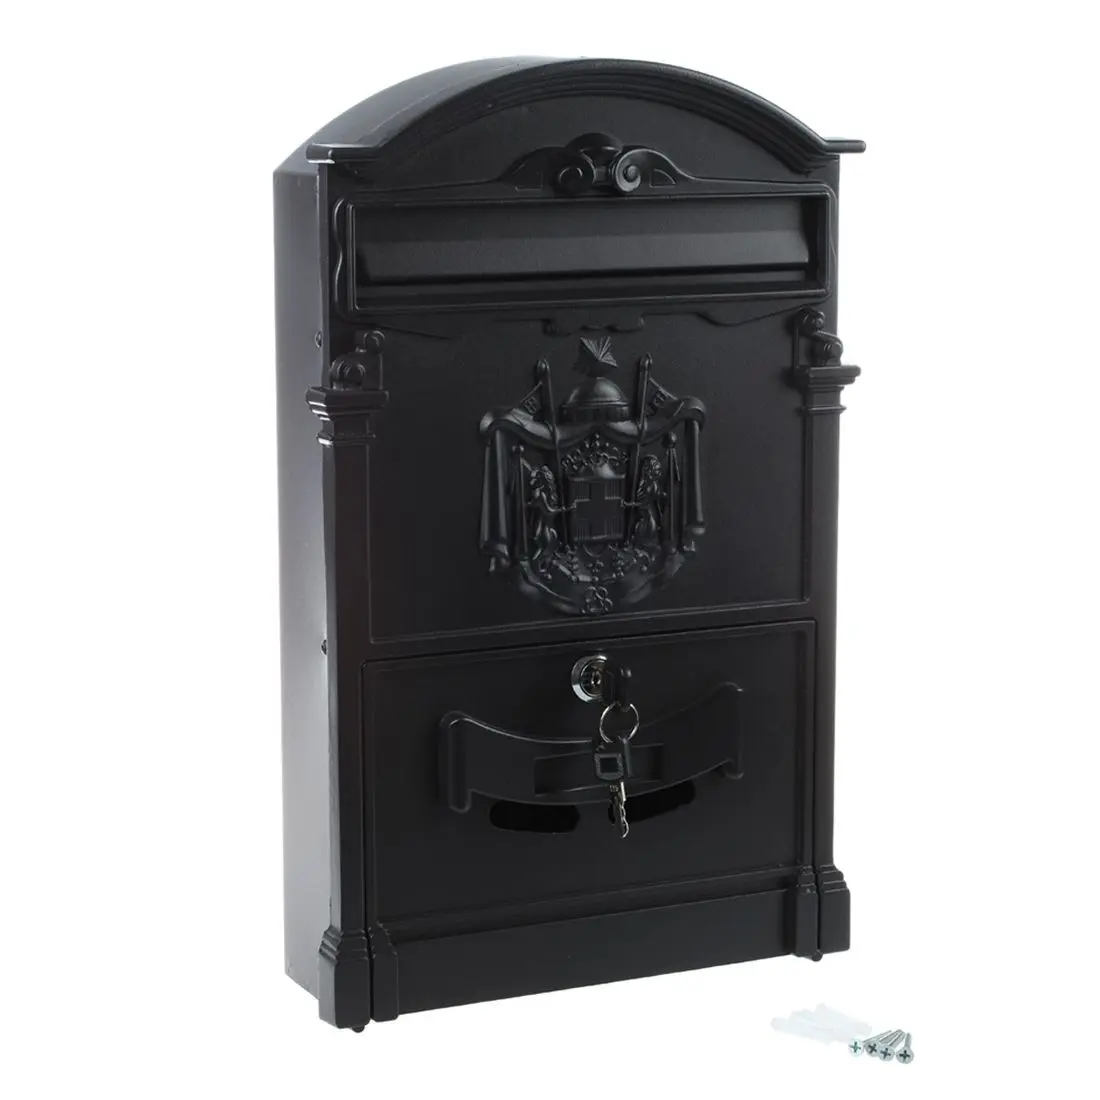 Сверхмощный Черный алюминиевый запираемый безопасный почтовый ящик Letterbox